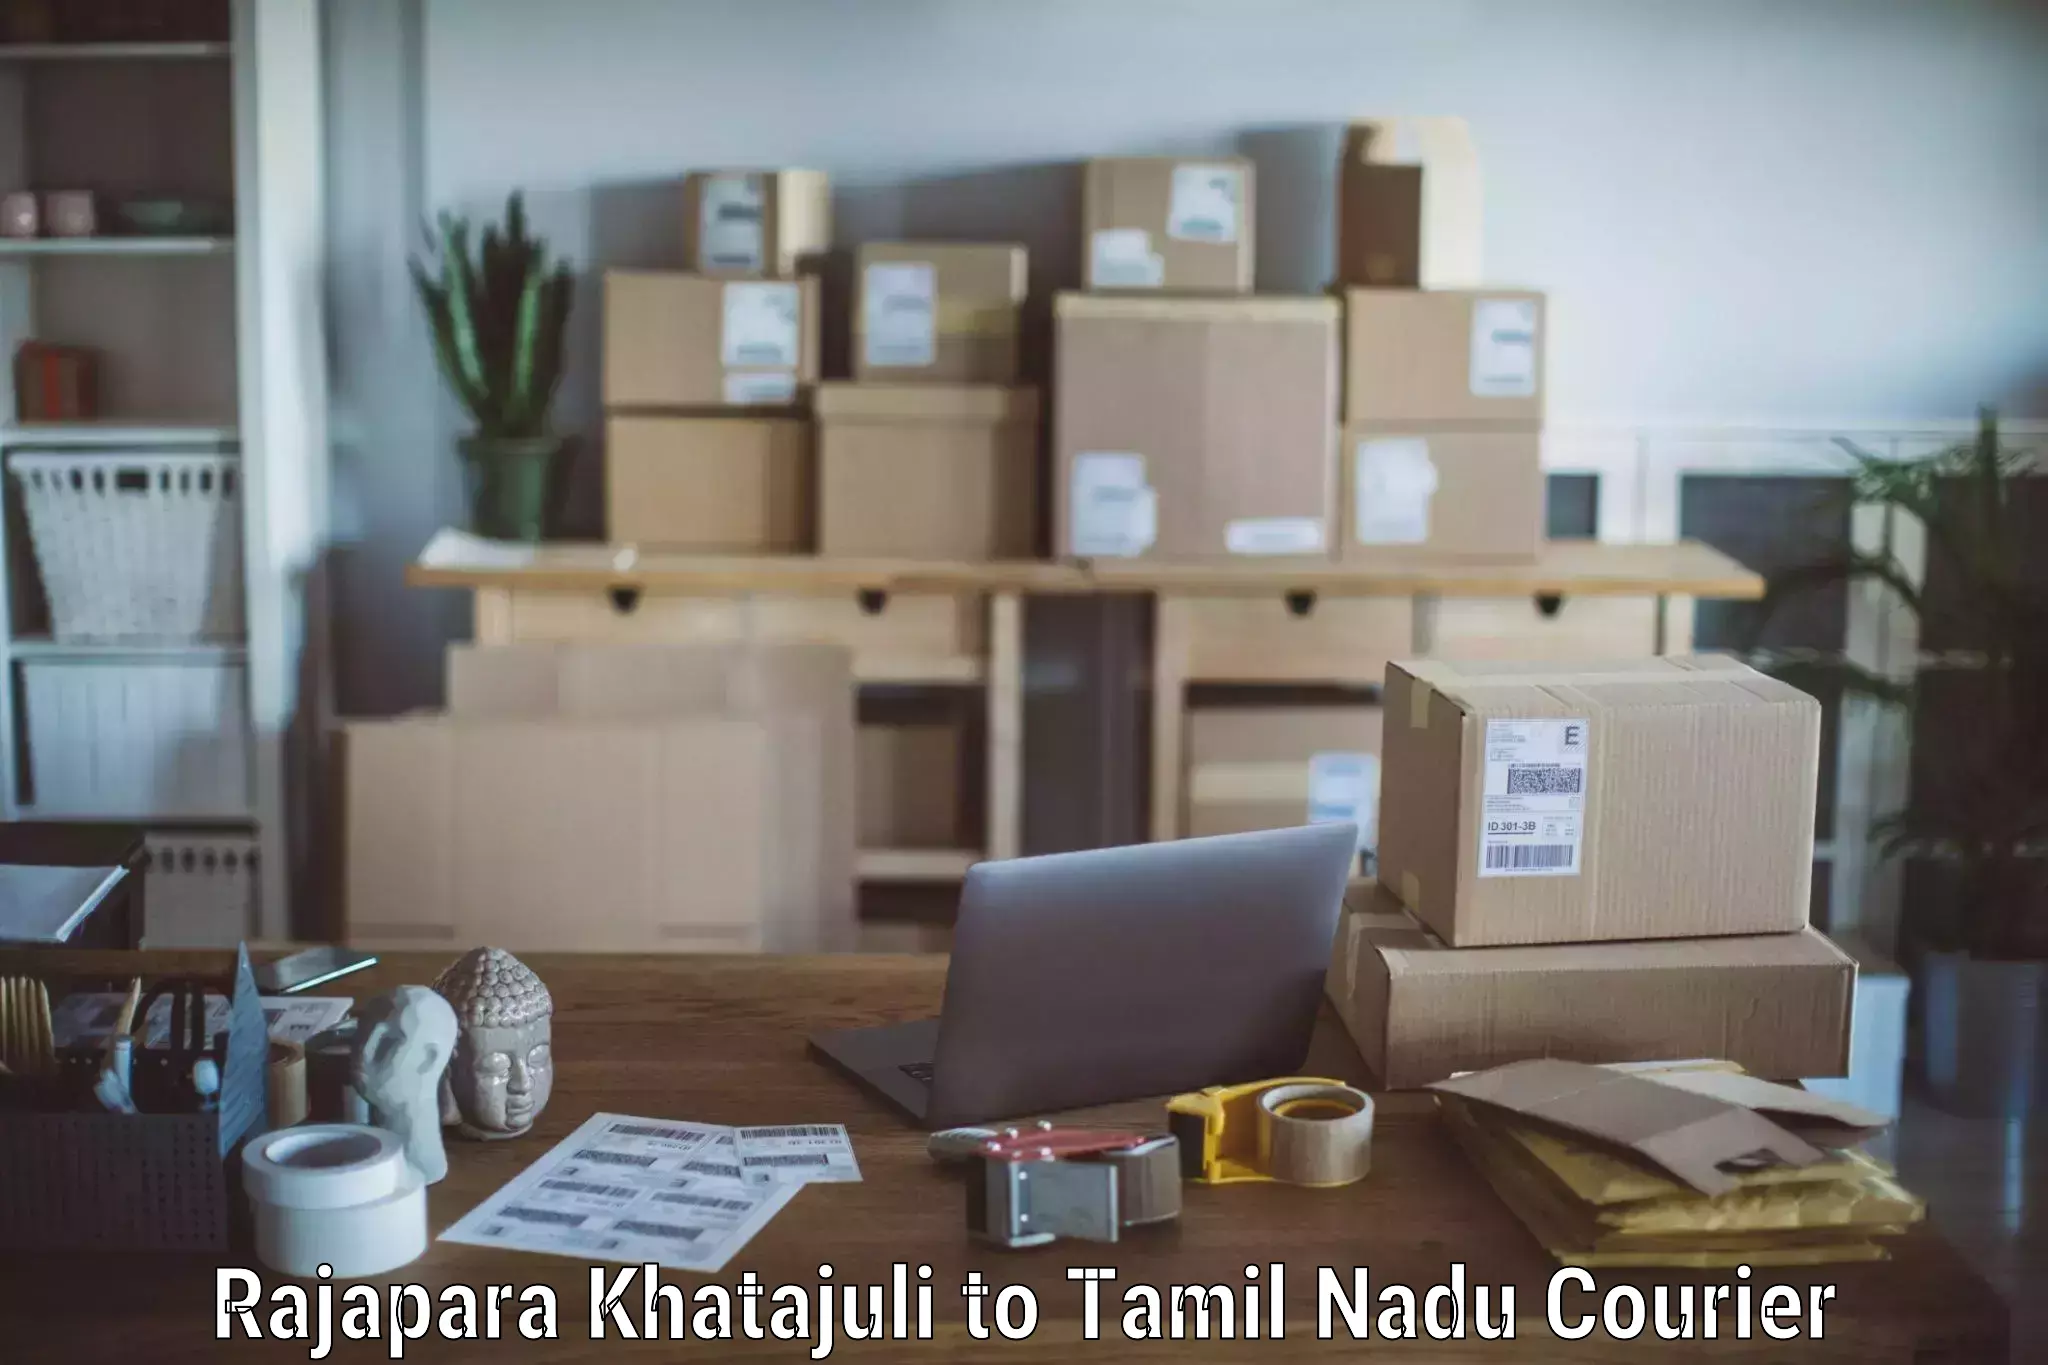 Professional furniture movers Rajapara Khatajuli to Ayyampettai